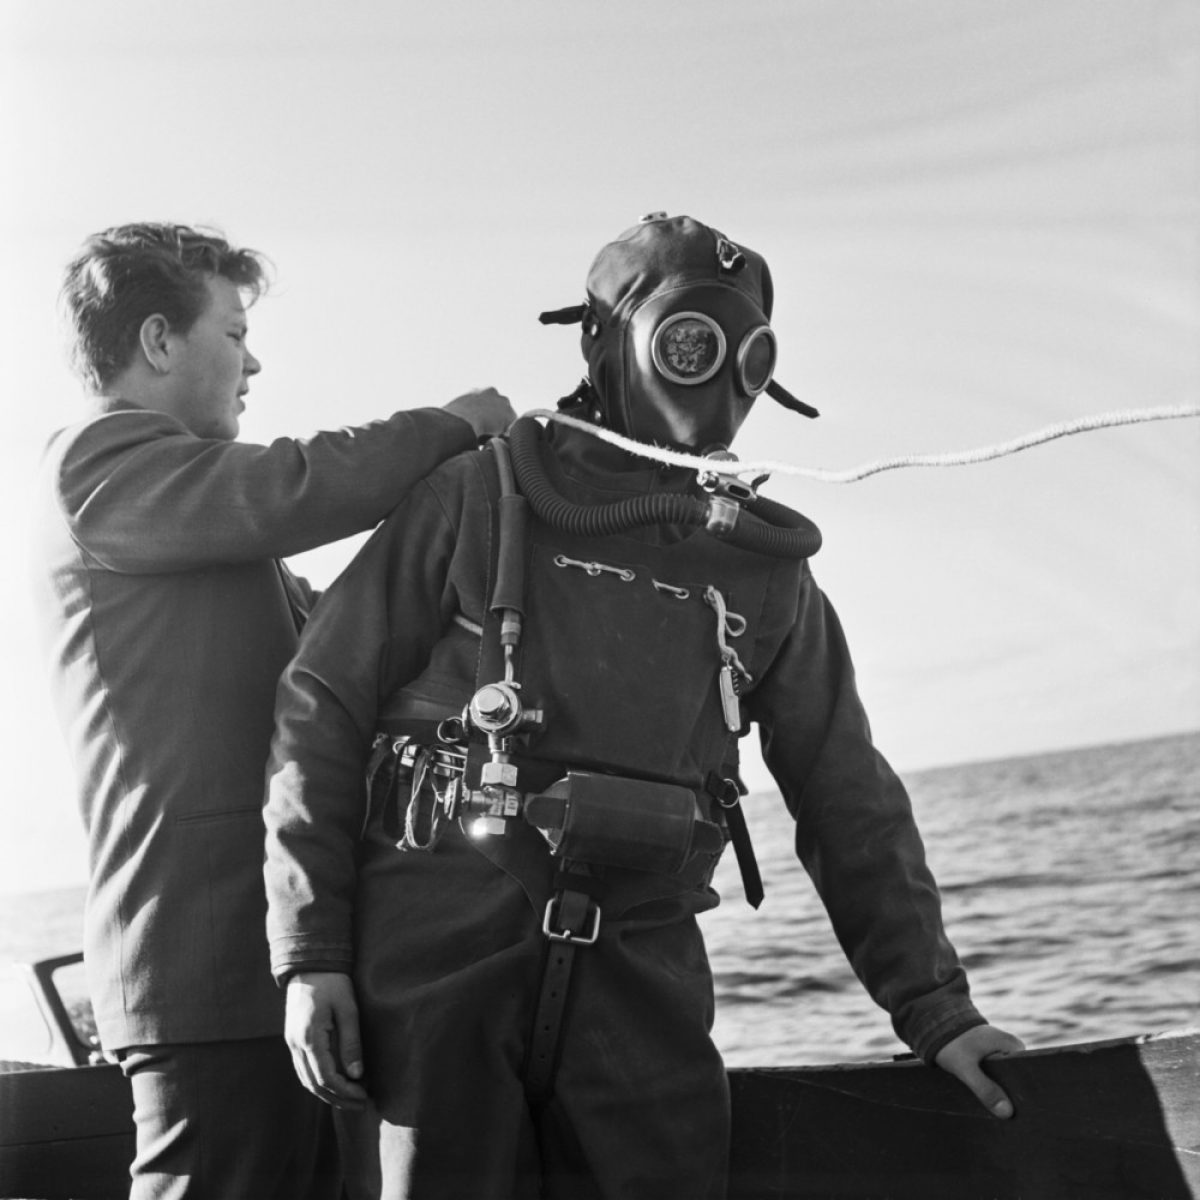 Matti Jämsä valmistautuu lyömään Draeger DW-38 -sammakkosukelluspuvun syvyyssukellusennätyksen vuonna 1954. Jämsä sukelsi 61 metrin syvyyteen. Kuva: UA Saarinen / JOKA / Museovirasto